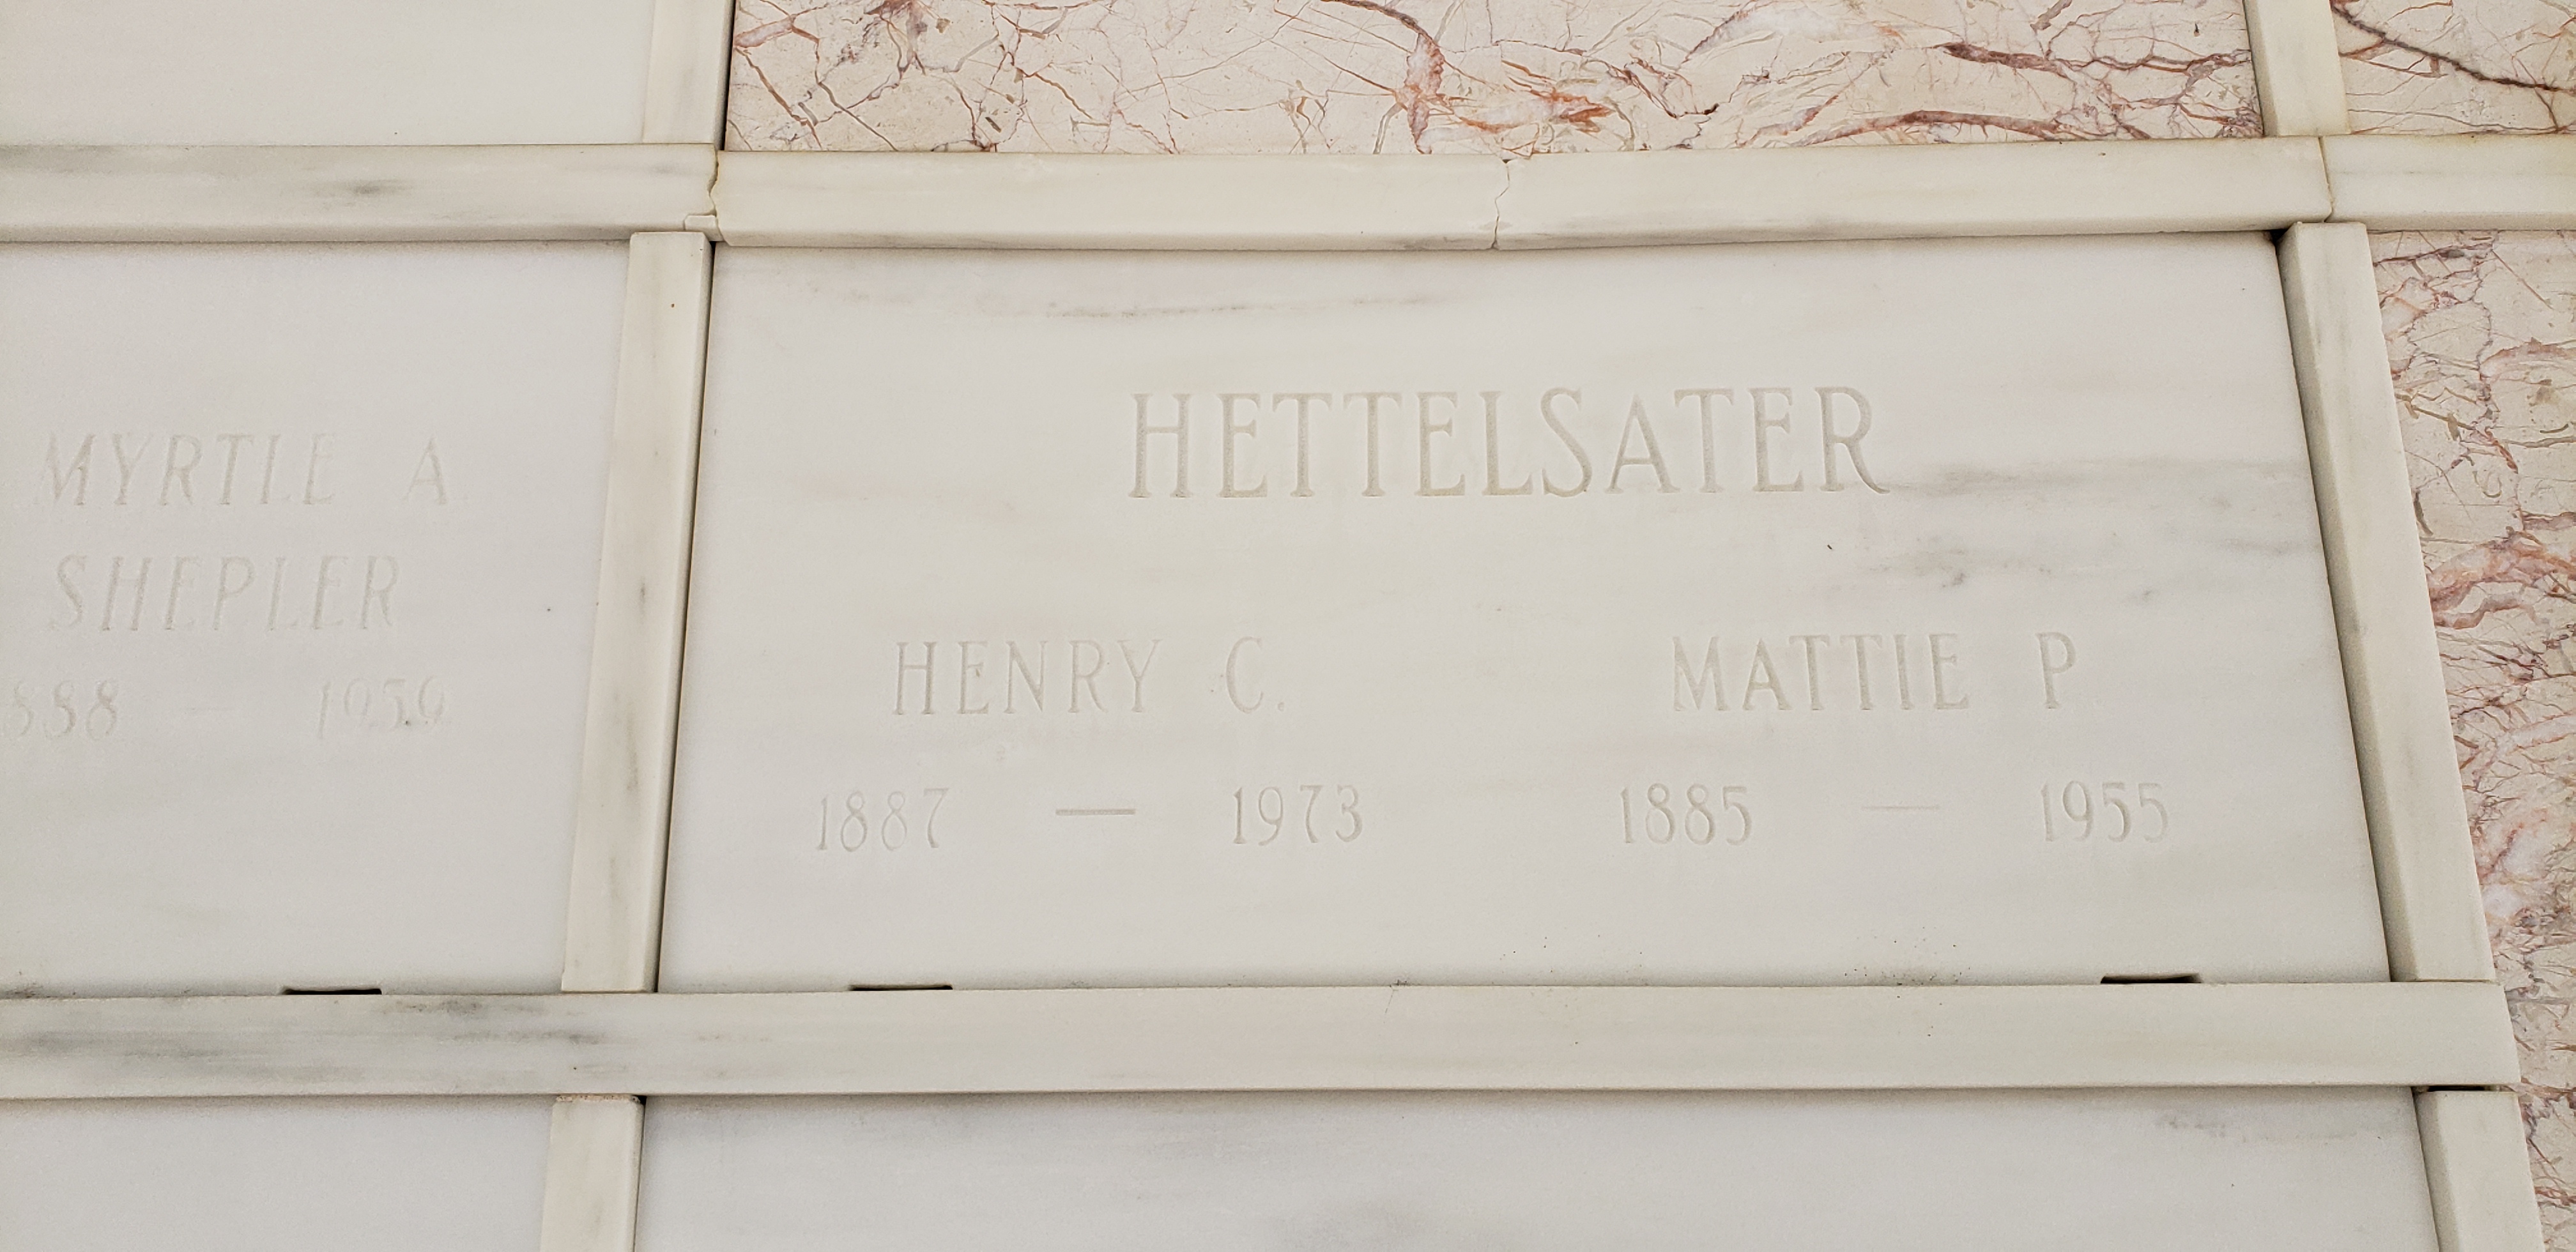 Henry C Hettelsater